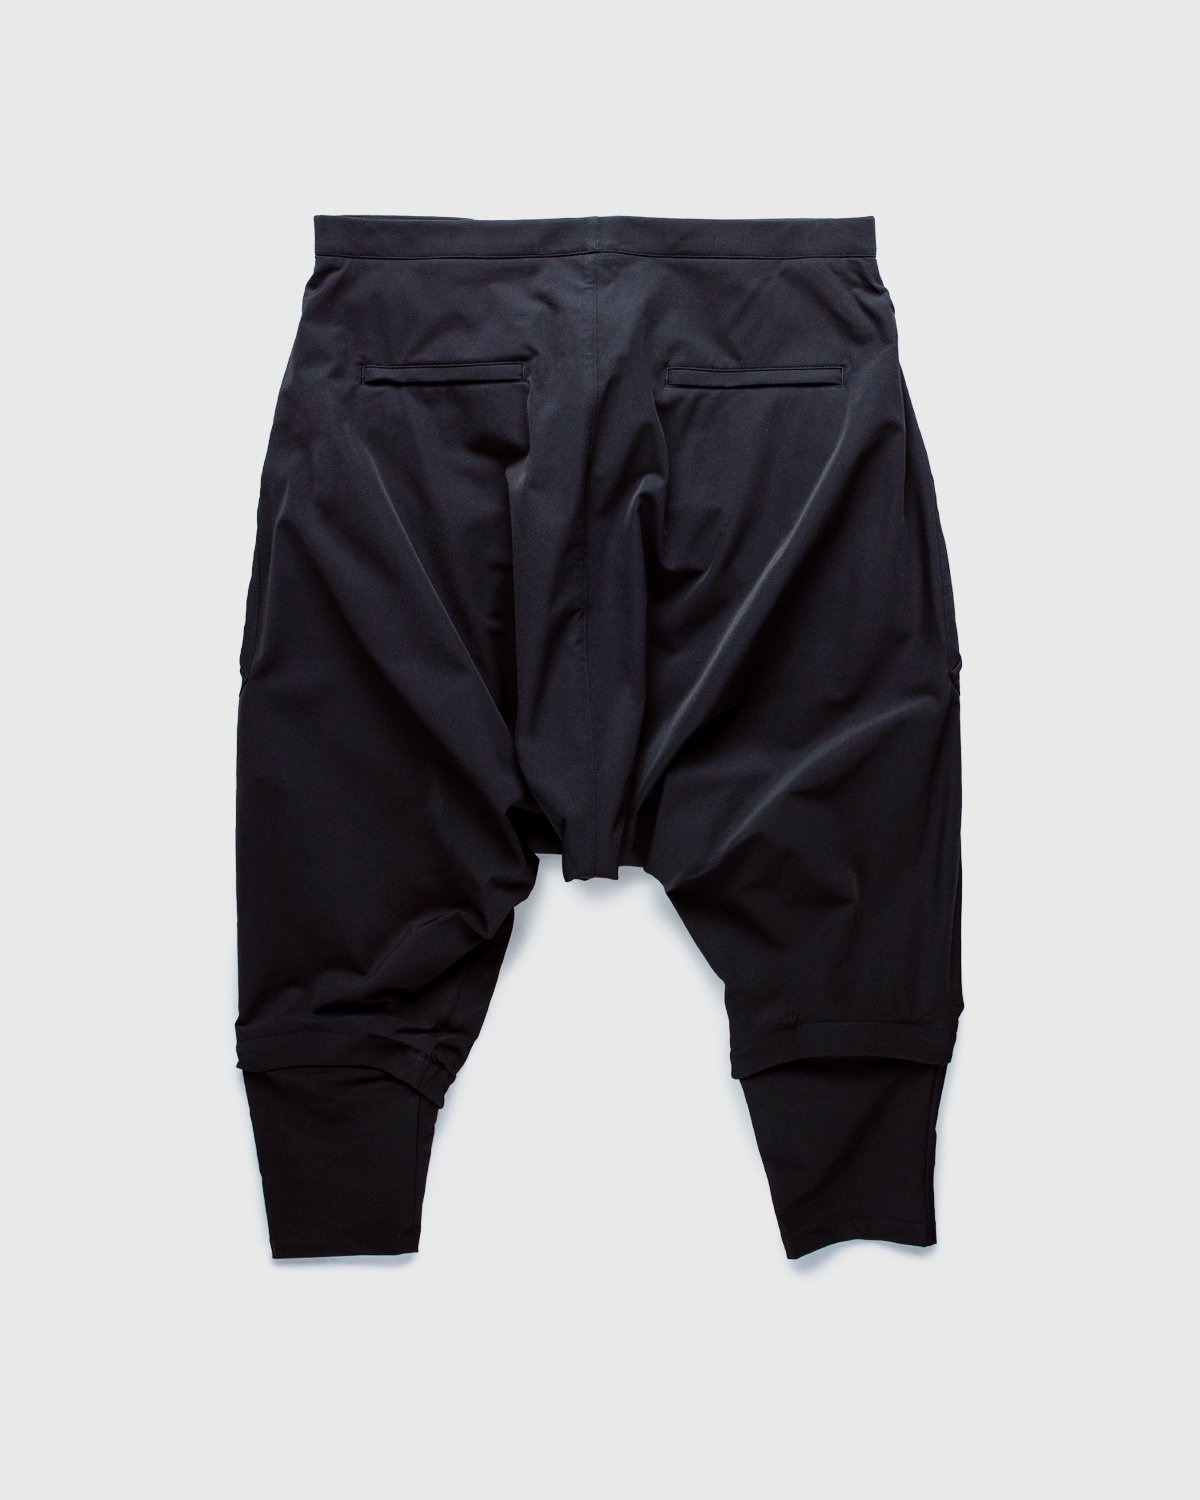 ACRONYM – P30A-DS Pants Black - Active Pants - Black - Image 2